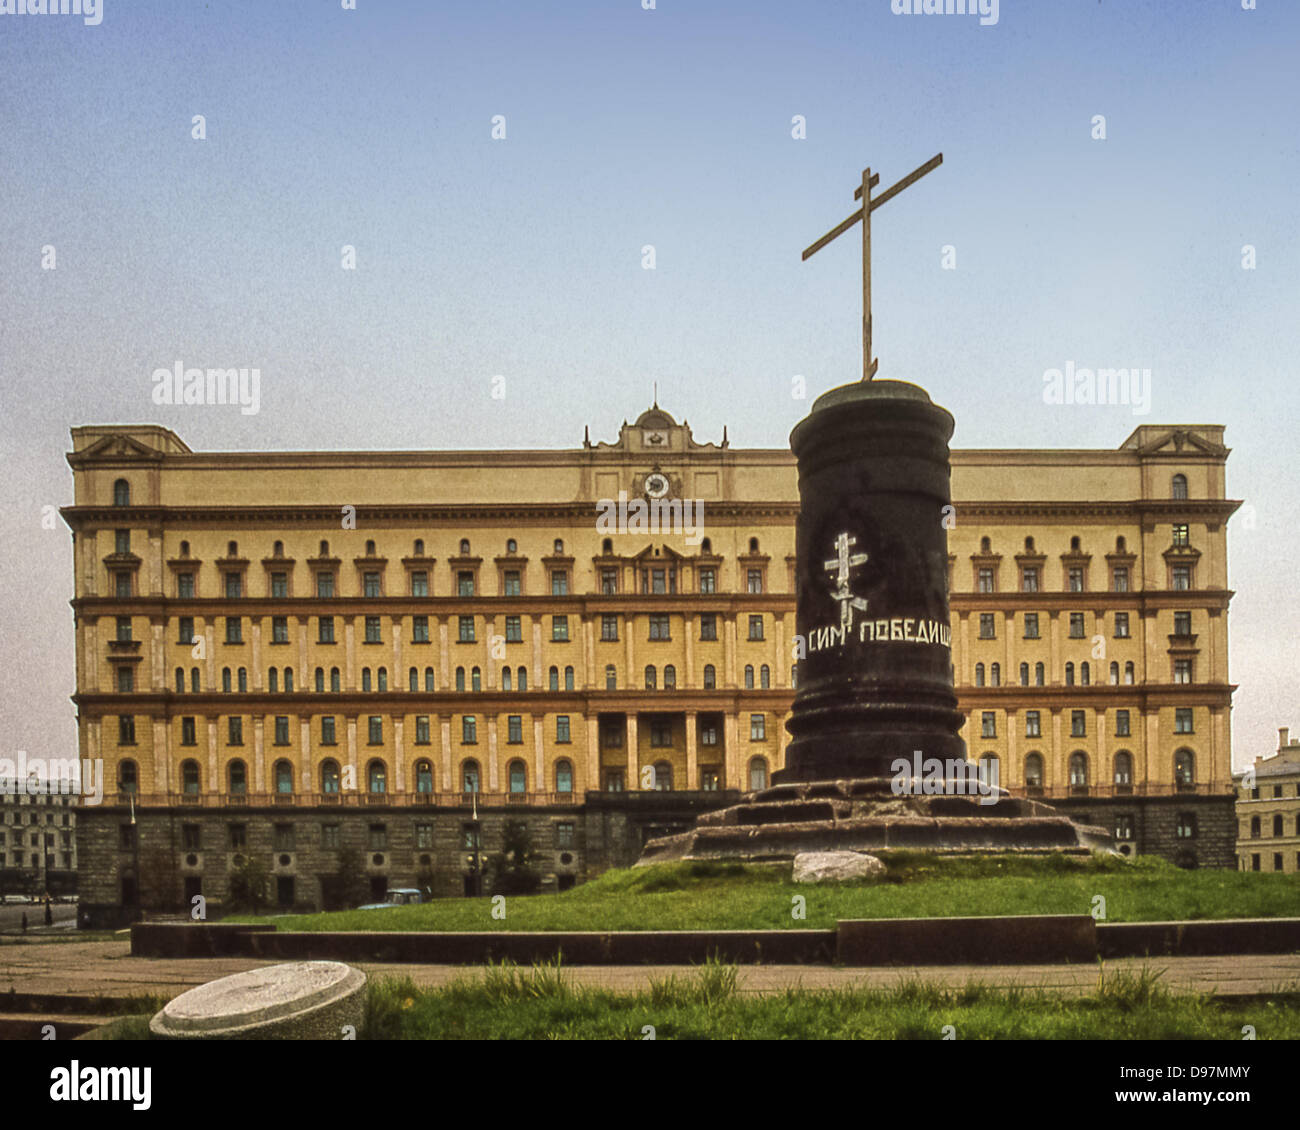 El 10 de octubre, 1992 - Moscú, RU - la antigua sede de la KGB (Comité para la Seguridad del Estado), en la Plaza Lubyanka en Moscú, fotografiado en octubre de 1992, tras la estatua de Felix Dzerzhinsky, primer jefe de la policía secreta soviética, un hito de Moscú durante los tiempos Soviéticos, había sido retirado de su base, tras el fracaso del golpe de estado de 1991 contra Gorbachov, y reemplazarlo con una cruz ortodoxa rusa. Después de la disolución de la URSS y de la KGB en 1991, el edificio se convirtió en la sede del Servicio Federal de Seguridad (FSB), sucesor de la KGB. (Crédito de la Imagen: © Arnold Drapkin/ZUMAPRESS.com) Foto de stock